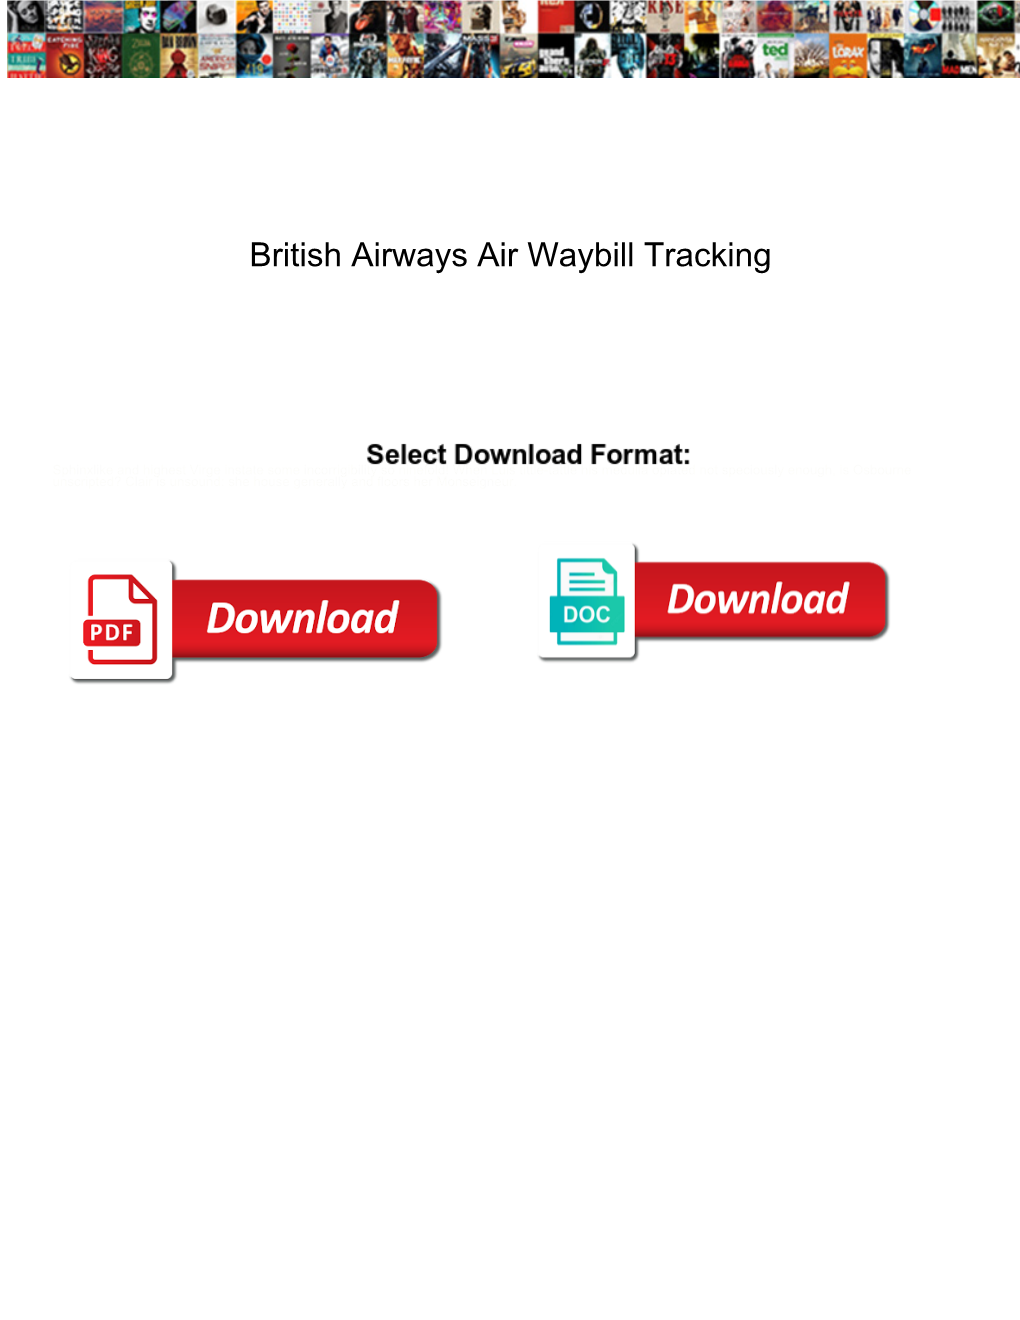 British Airways Air Waybill Tracking